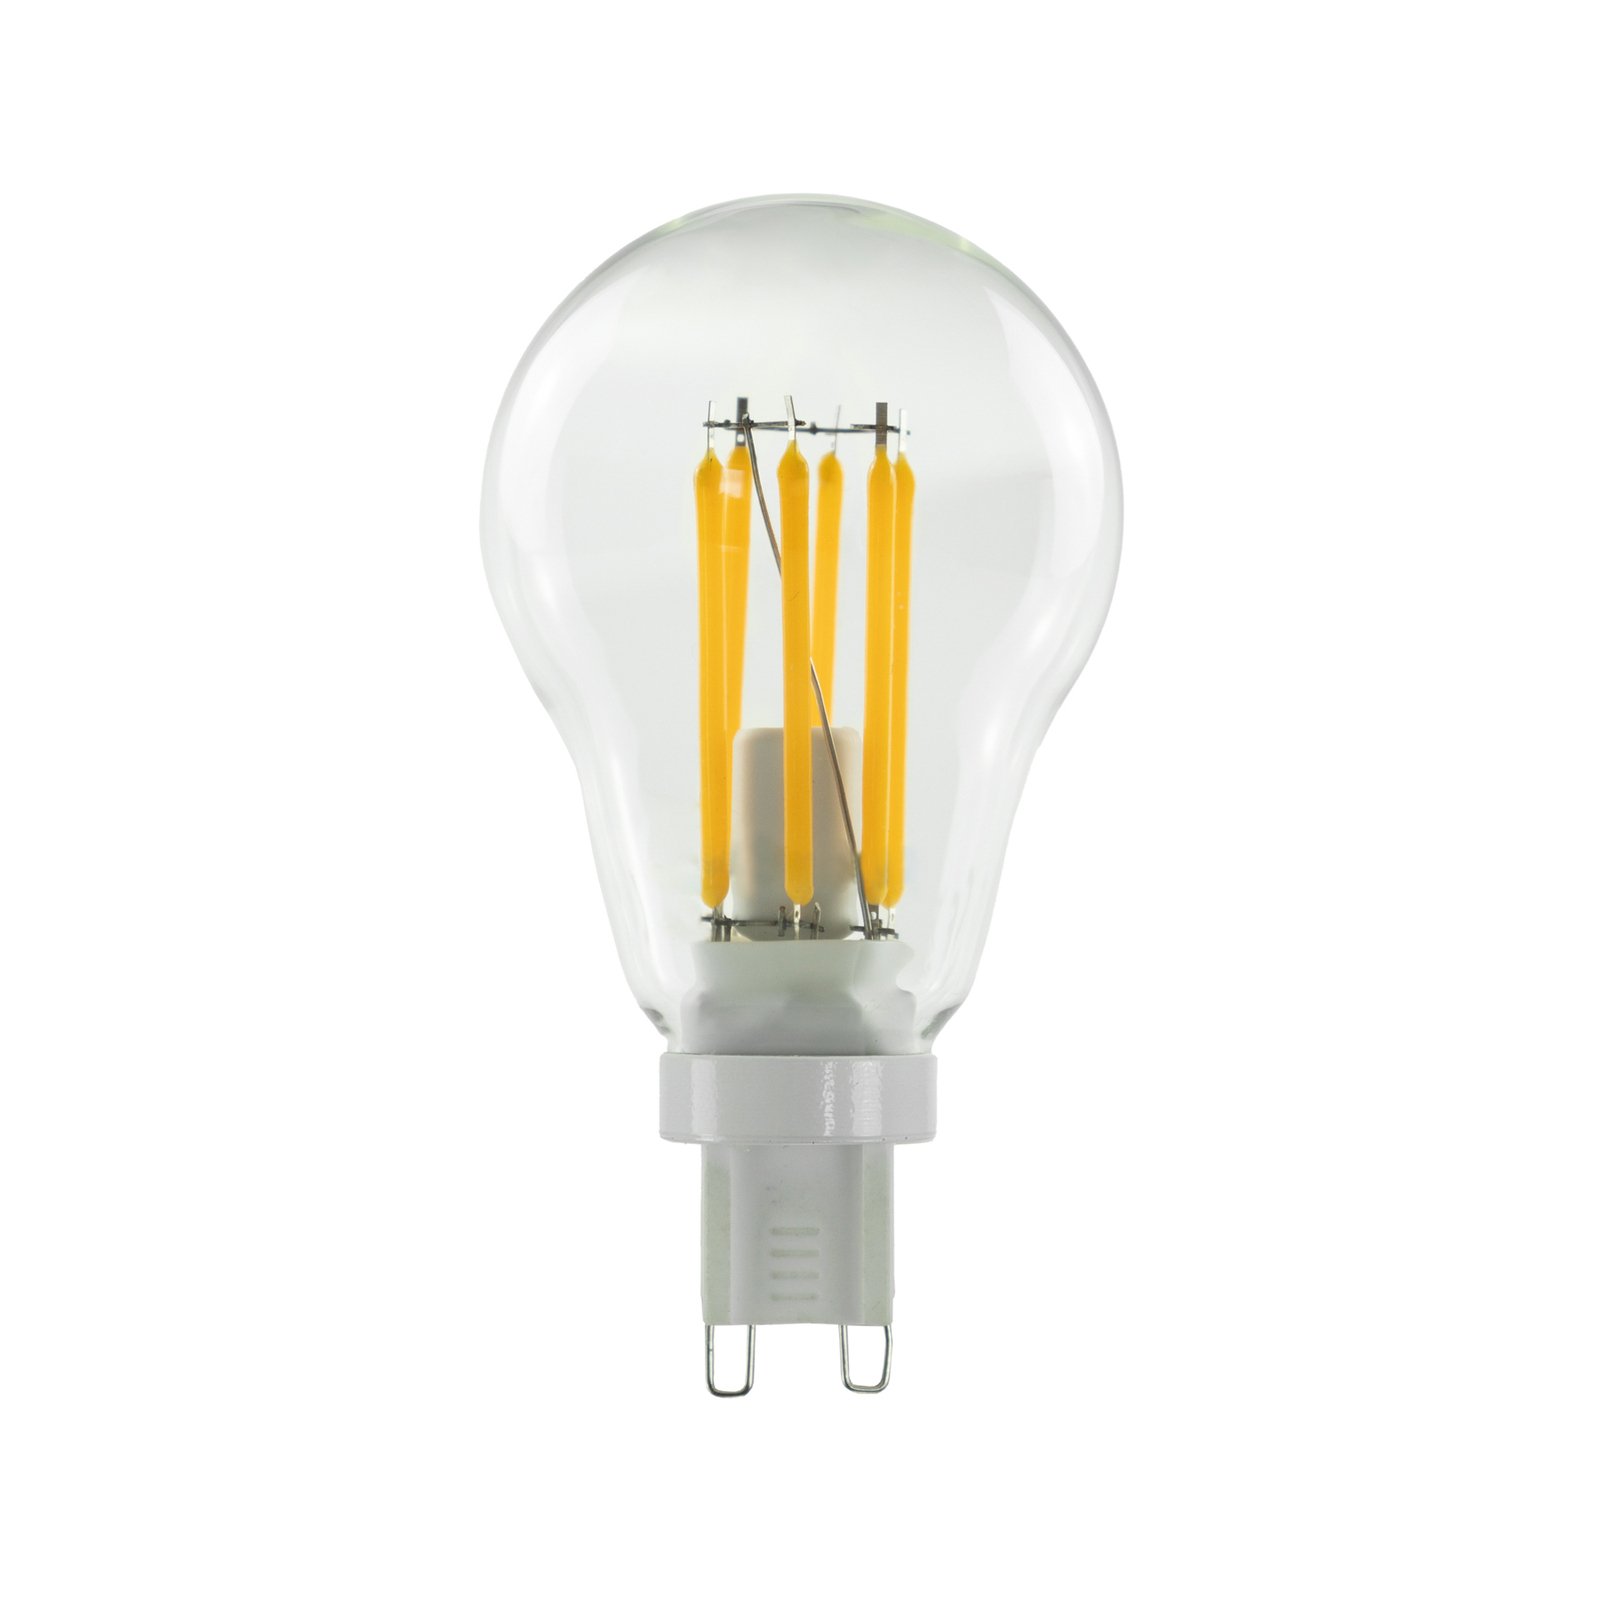 SEGULA LED bulb G9 3.2 W filament dim 2,700 K